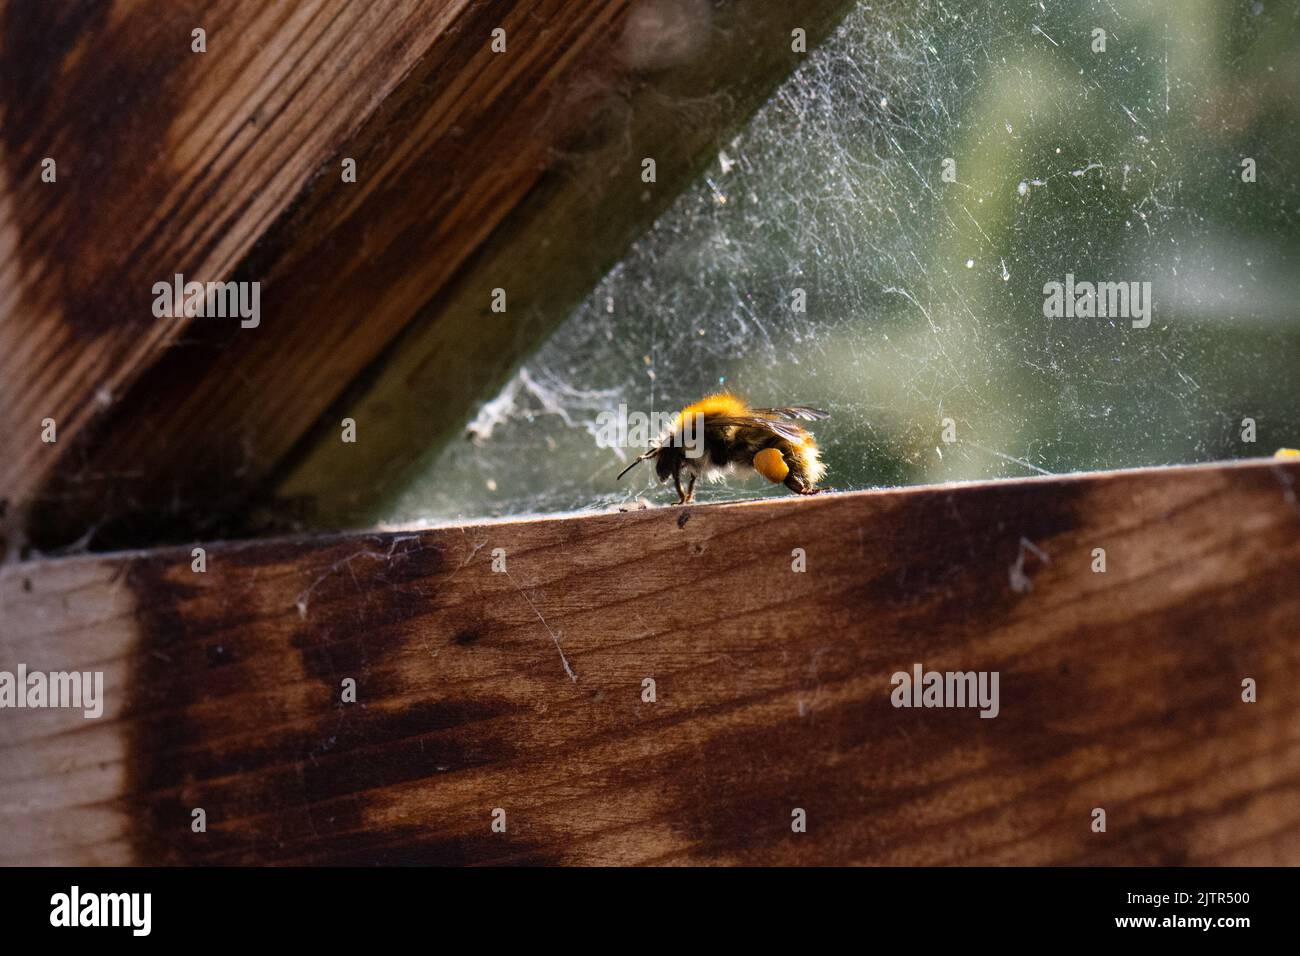 Abeille piégée - abeille commune piégée dans la serre - Royaume-Uni Banque D'Images